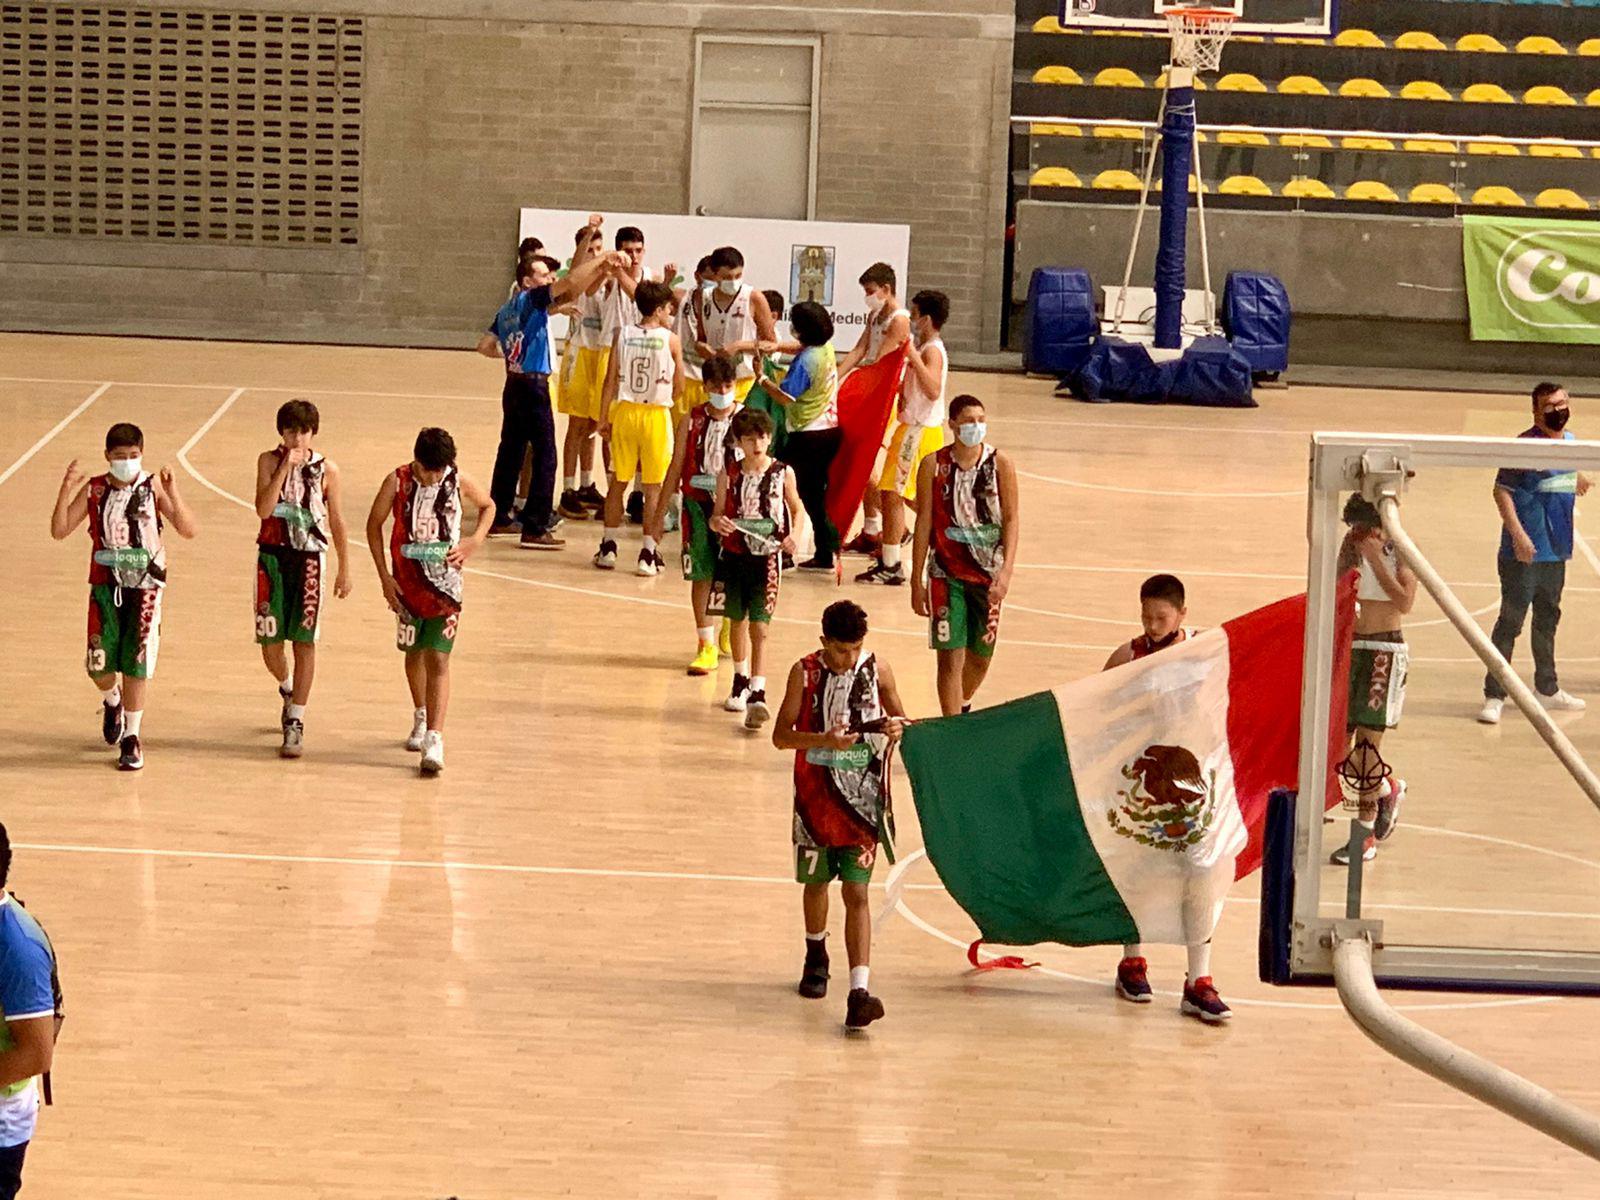 $!Equipo mexicano de baloncesto sella decorosa participación en Colombia